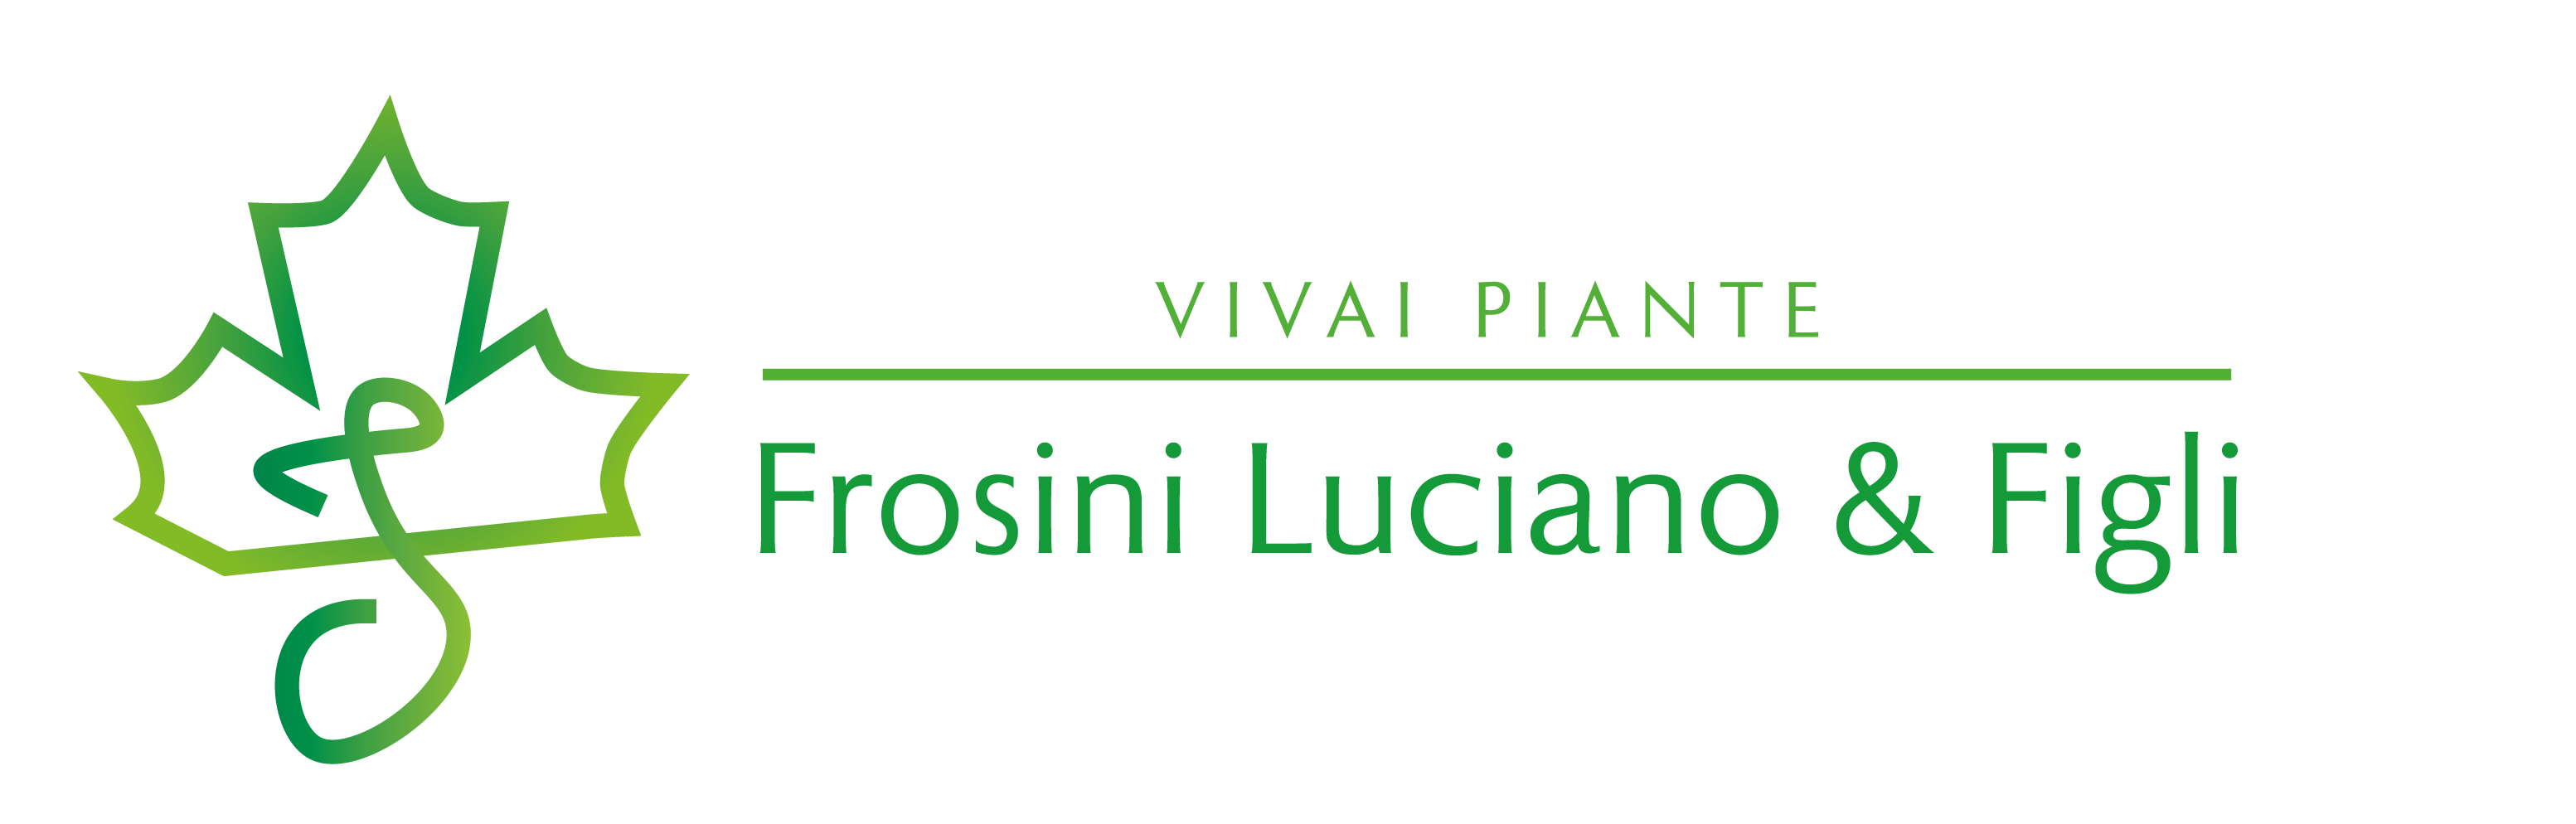 Vivai Piante | Frosini Luciano & Figli